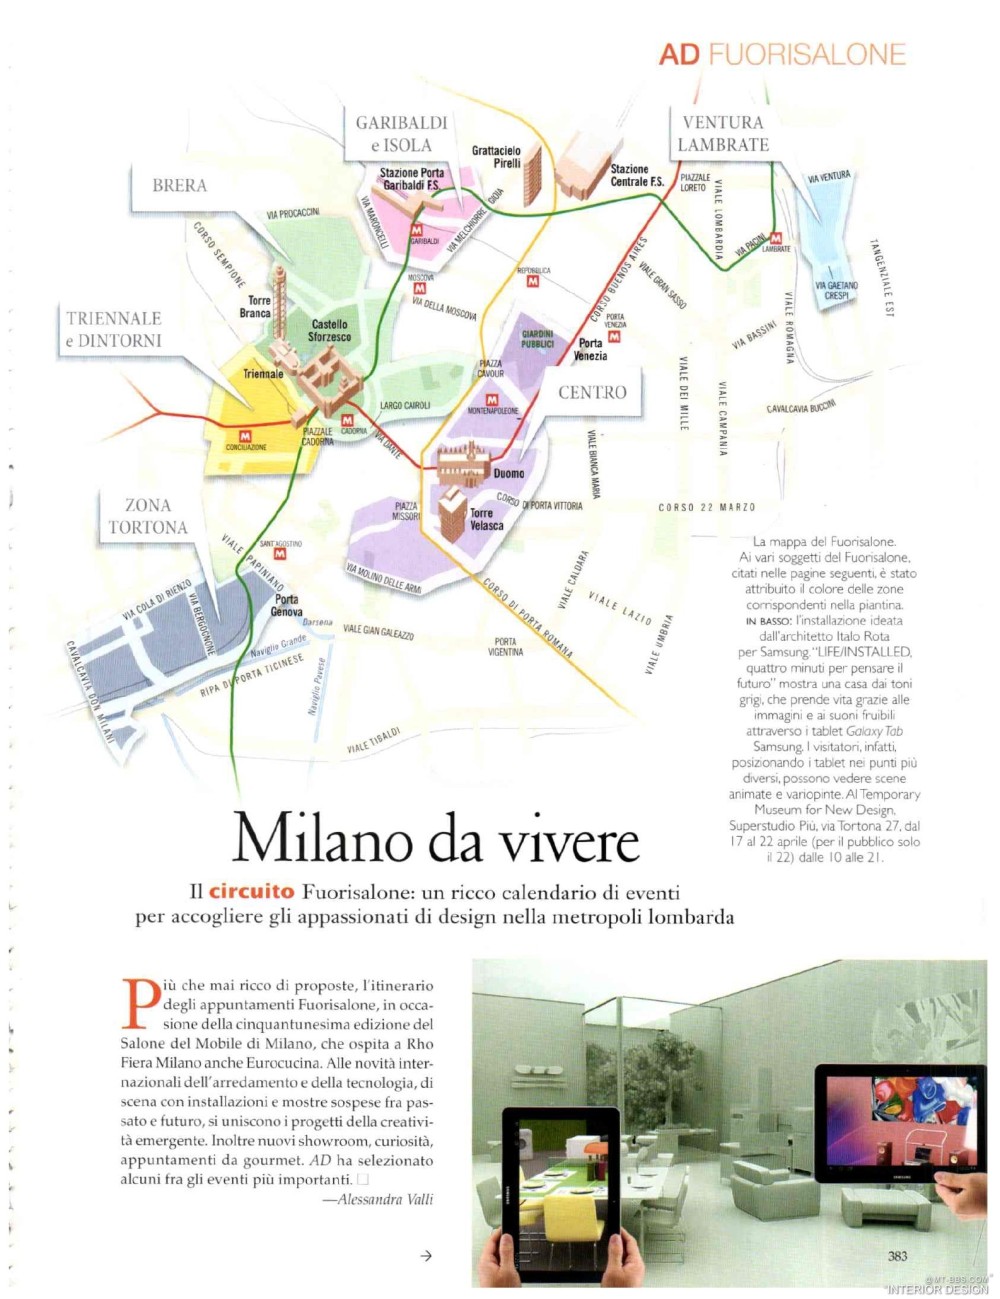 意大利AD 杂志 2012年全年JPG高清版本 全免（上传完毕）_0379.jpg